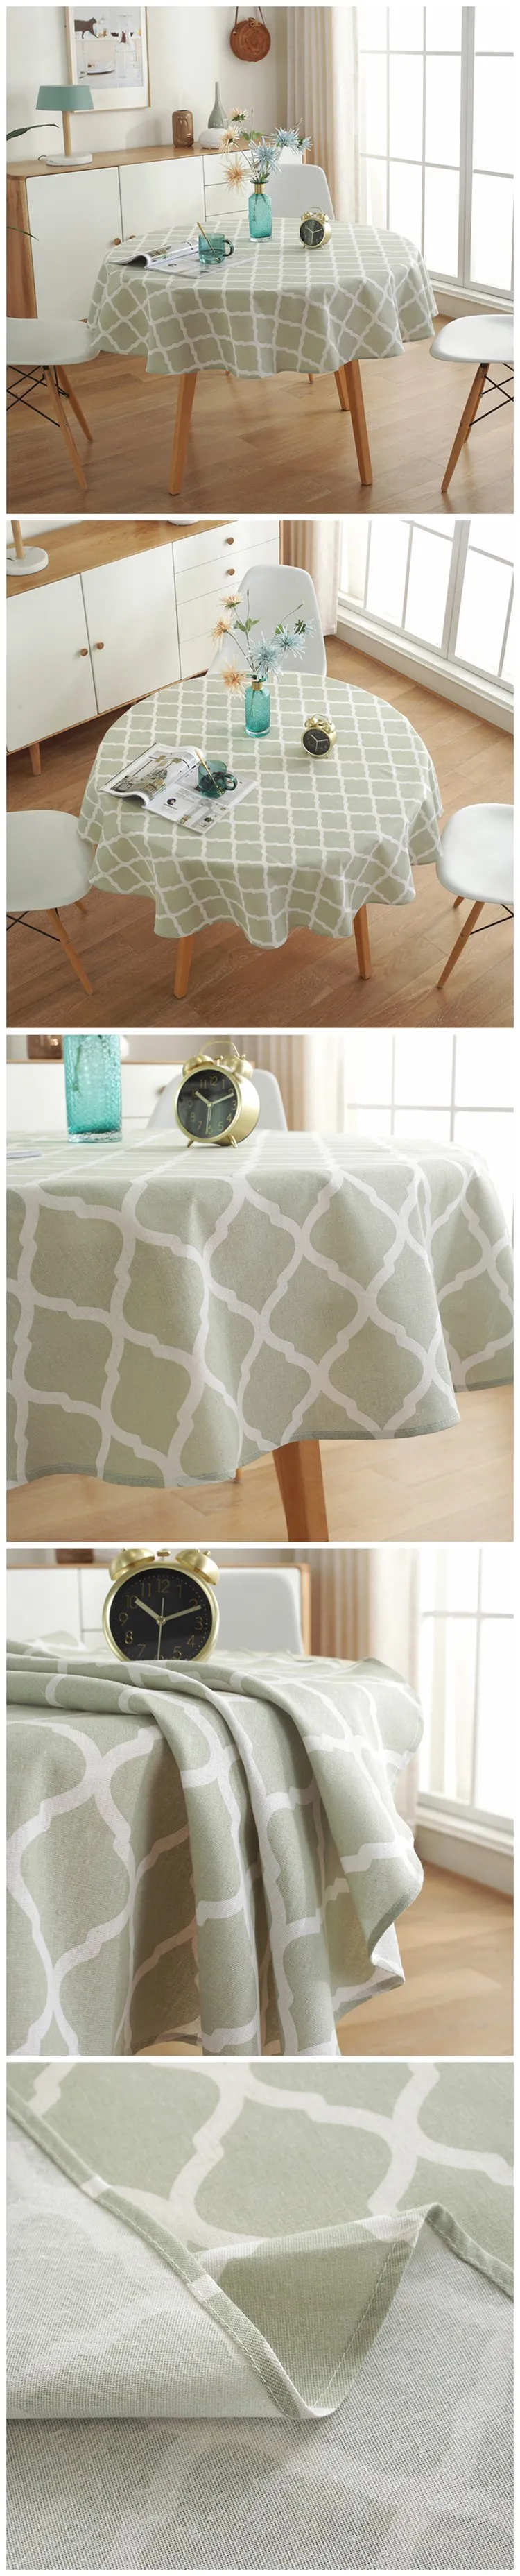 Details about   Plaid Stripe Tablecloth Round Cotton Linen Desk Cover Dustproof Kitchen Hotel 